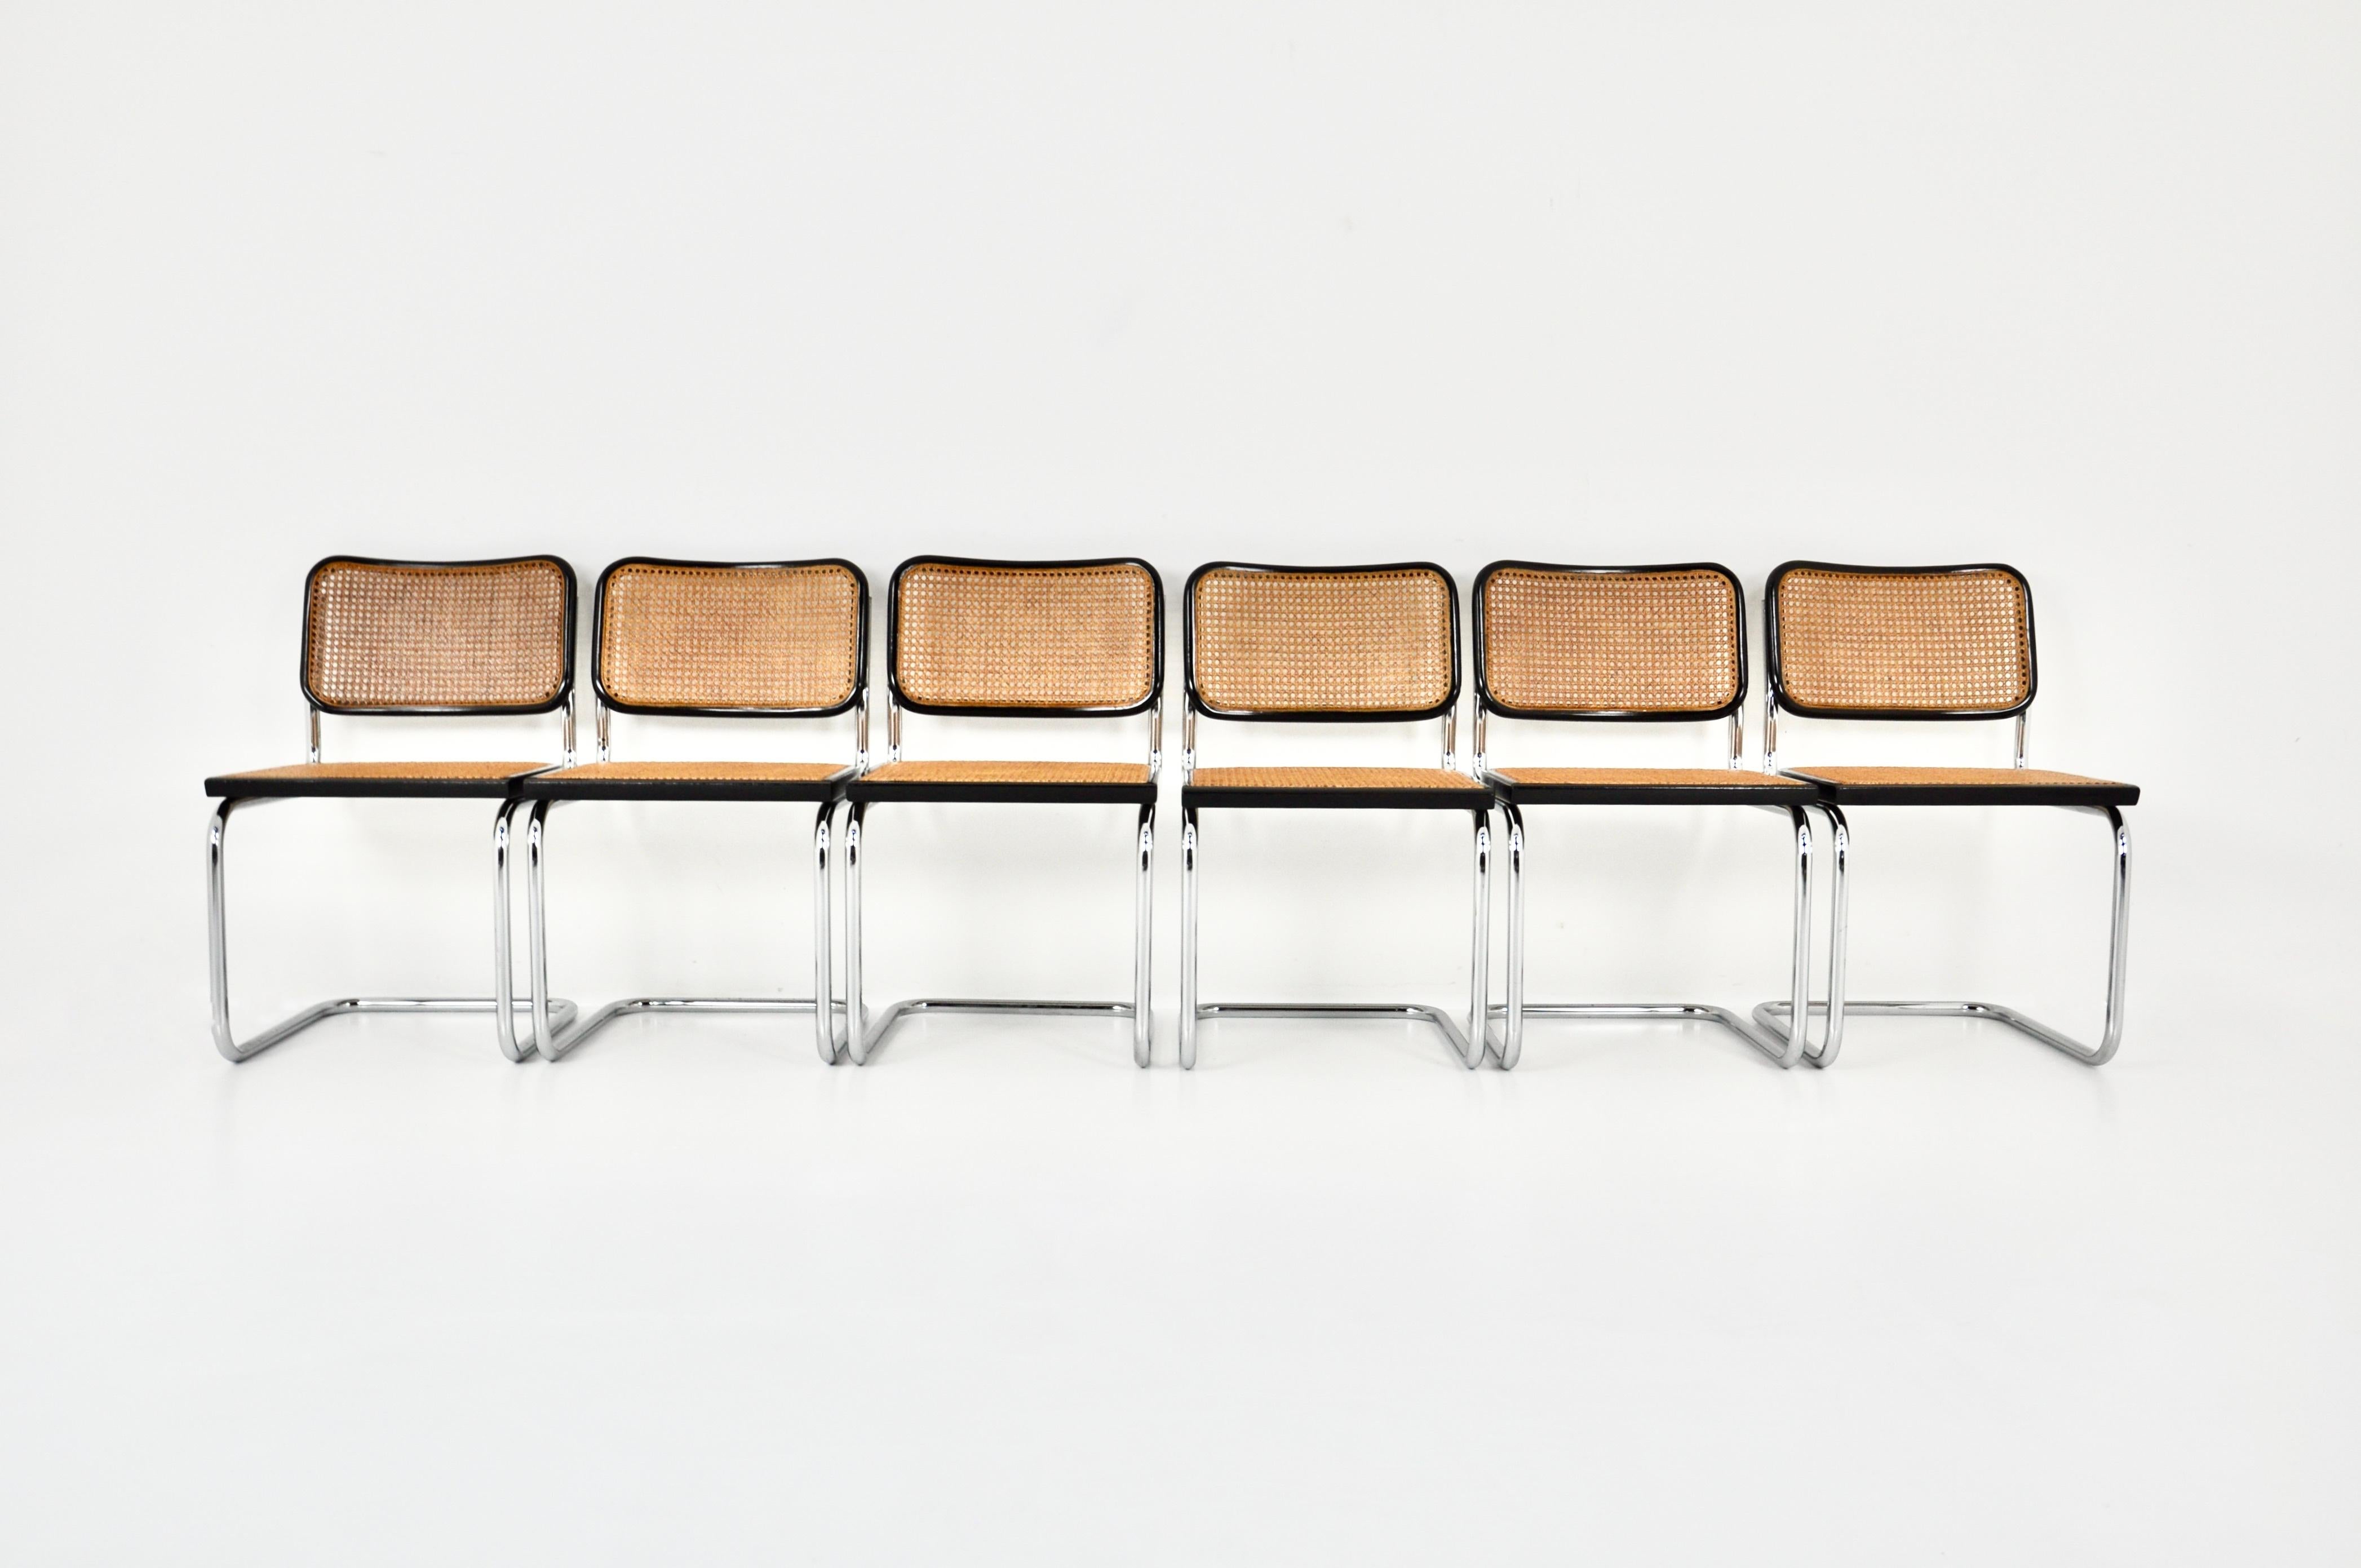 6er-Set  schwarze Stühle aus Metall, Holz und Rattan. Sitzhöhe: 45 cm. Abnutzung durch die Zeit und das Alter der Stühle. 